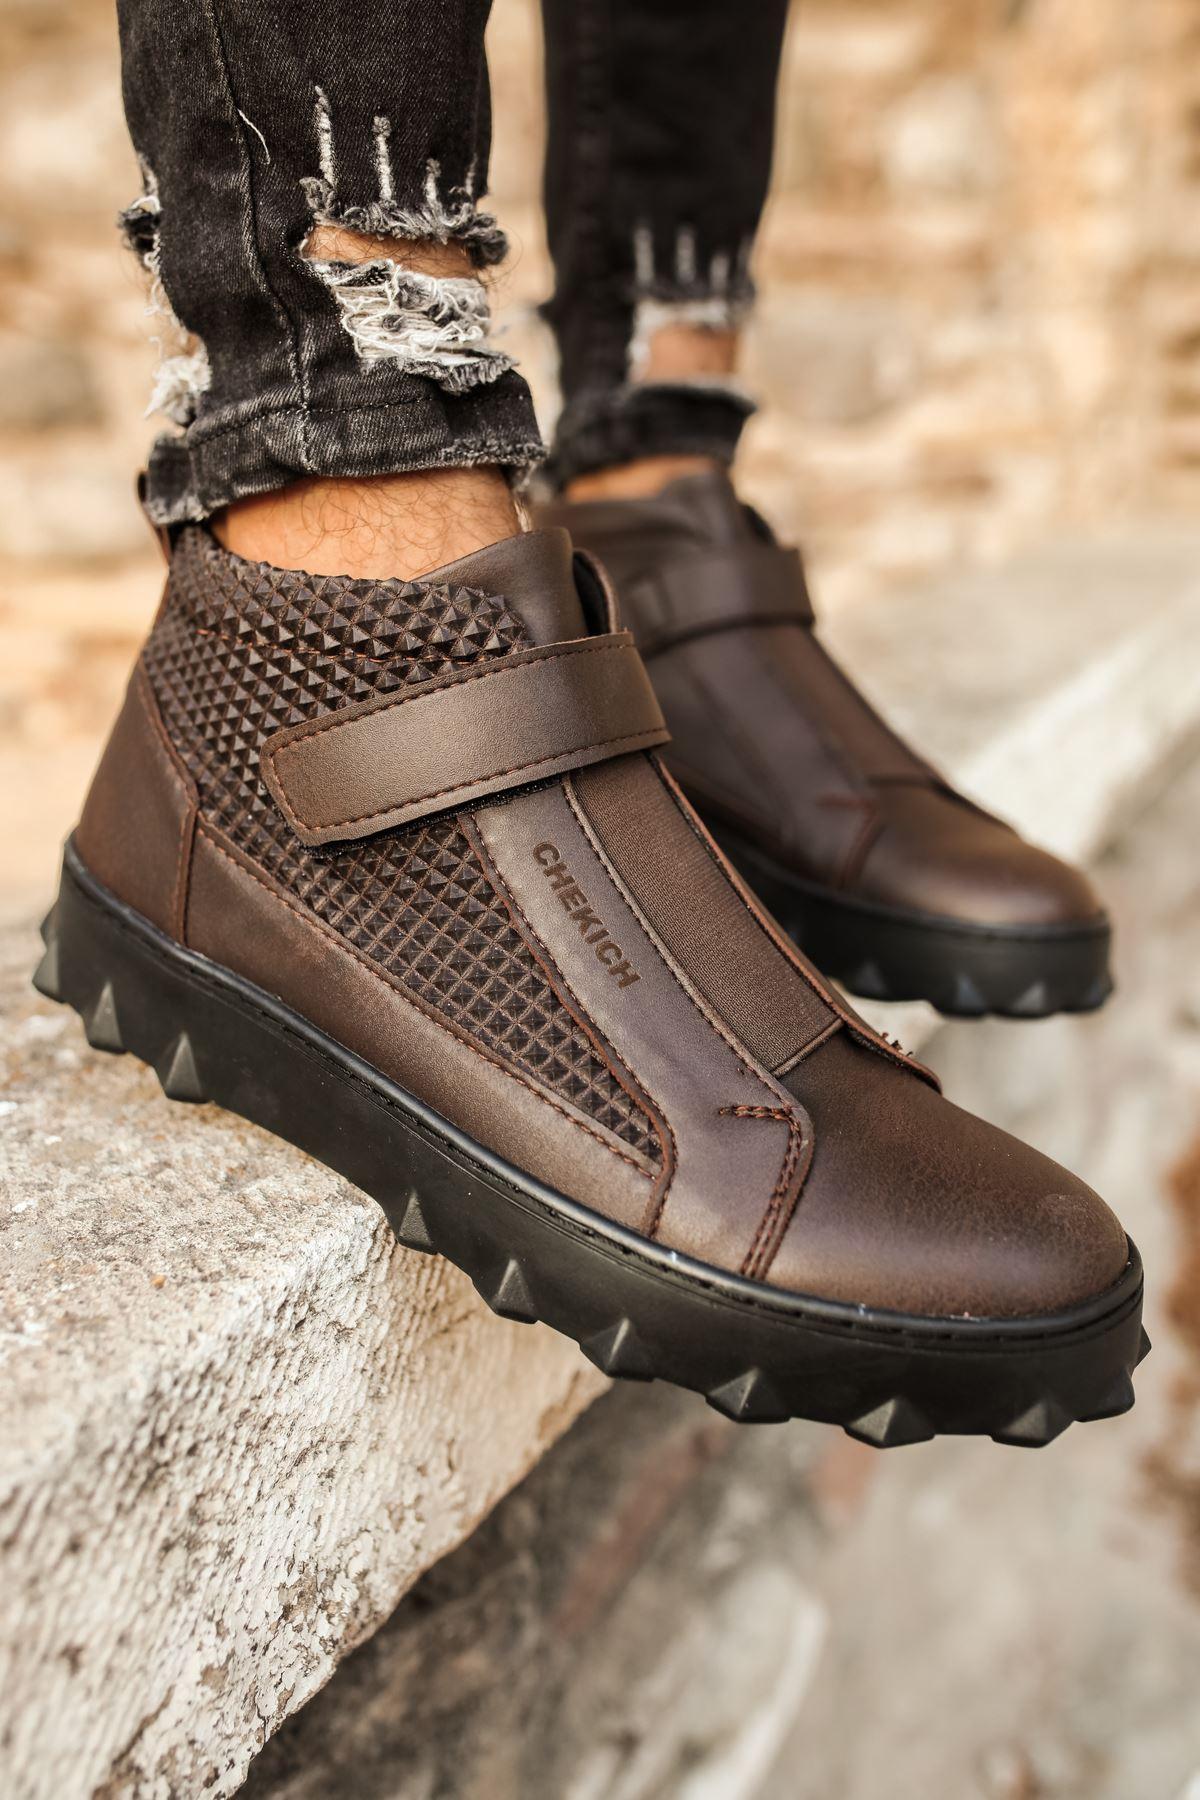 CH103 ST Men's Sneaker Boots BROWN - STREET MODE ™